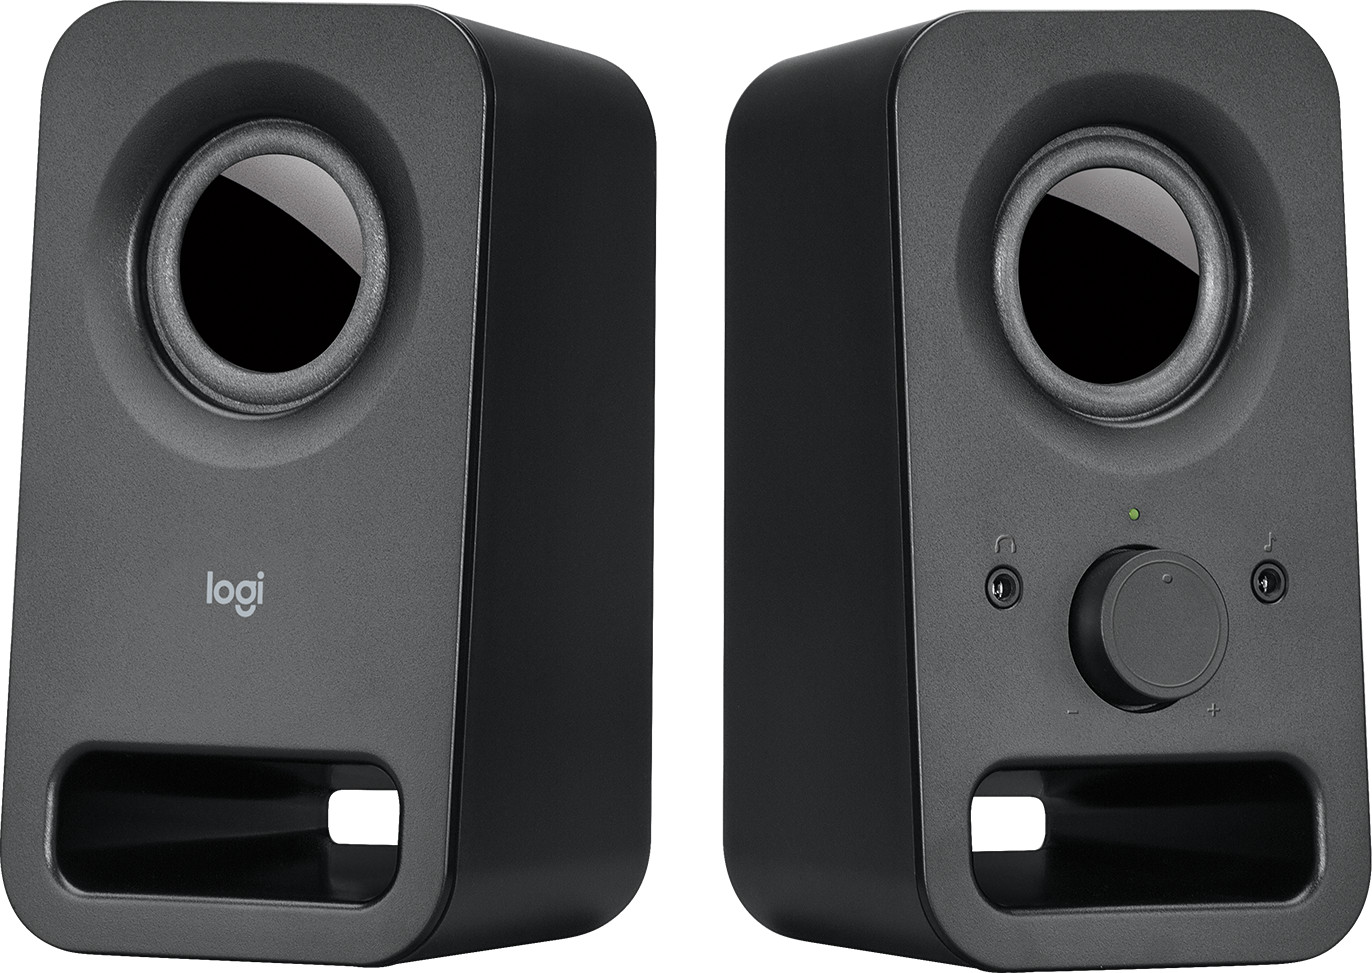 Haut-parleurs Logitech S120 pour PC - Noir (980-000010) prix Maroc